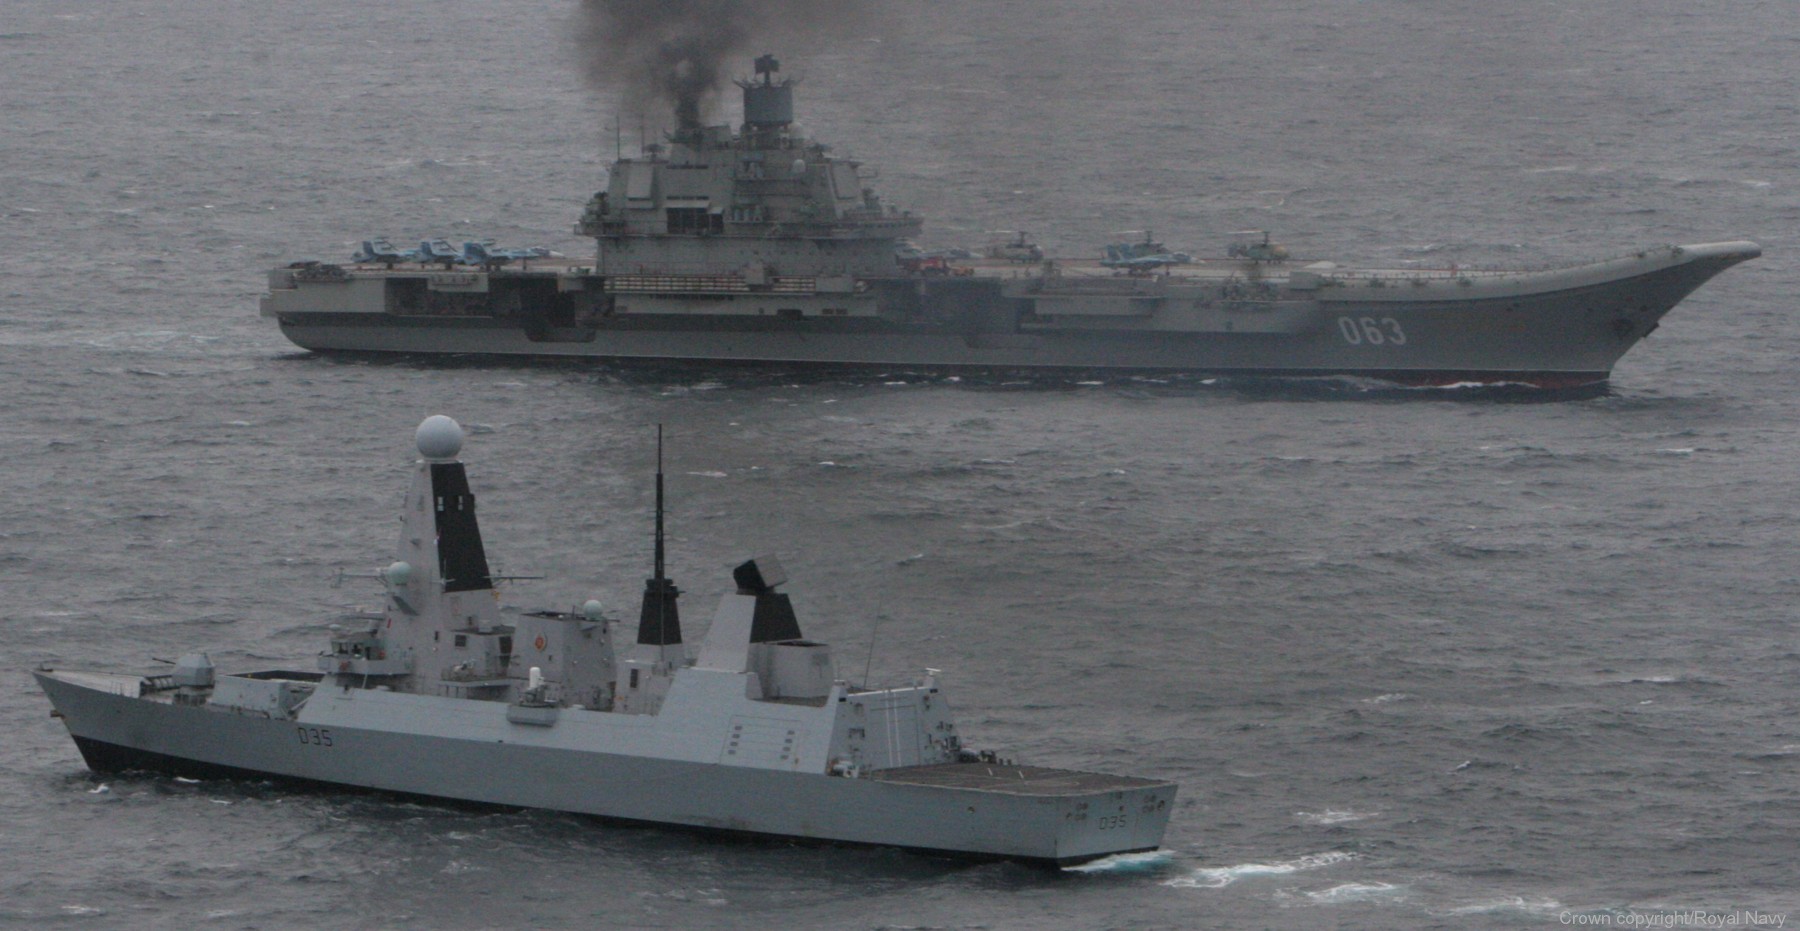 d-35 hms dragon admiral kutsnetsov 063 aircraft carrier russian navy